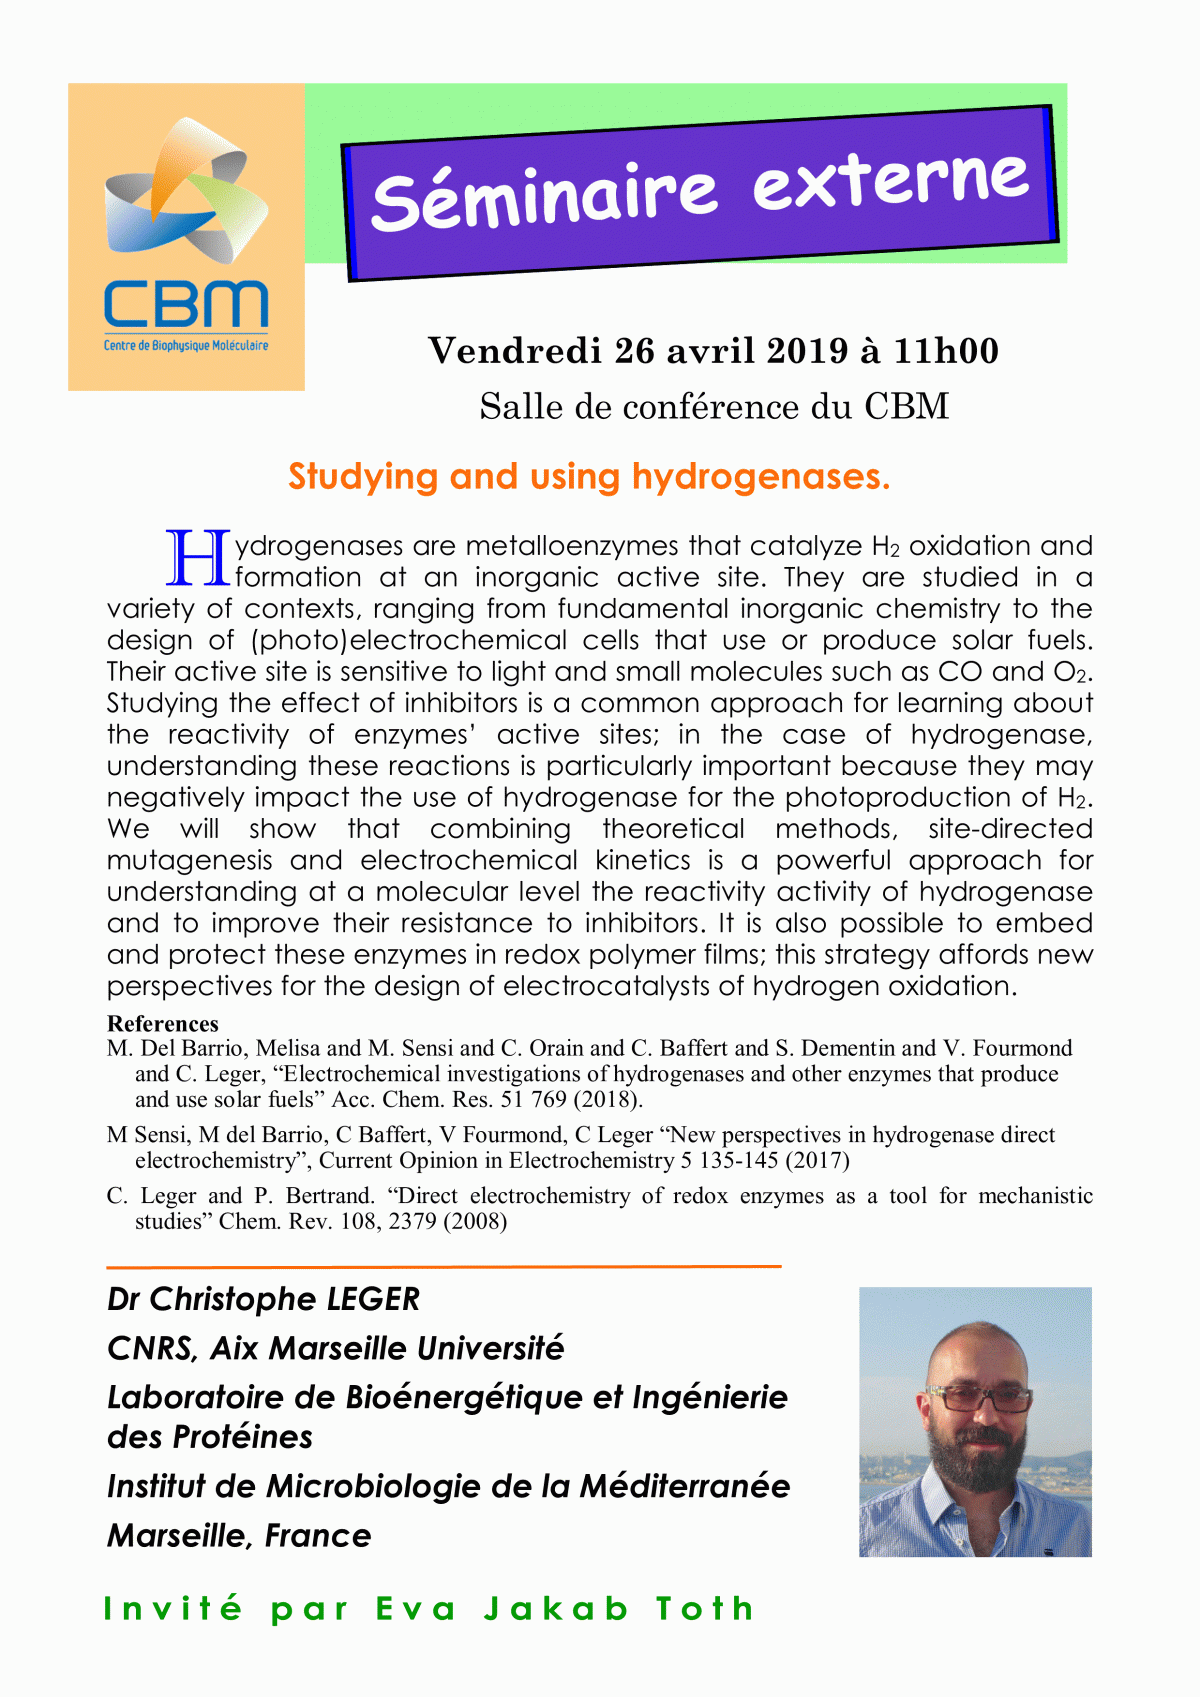 April 26, 2019 – externa seminar of Dr Christophe LÉGER